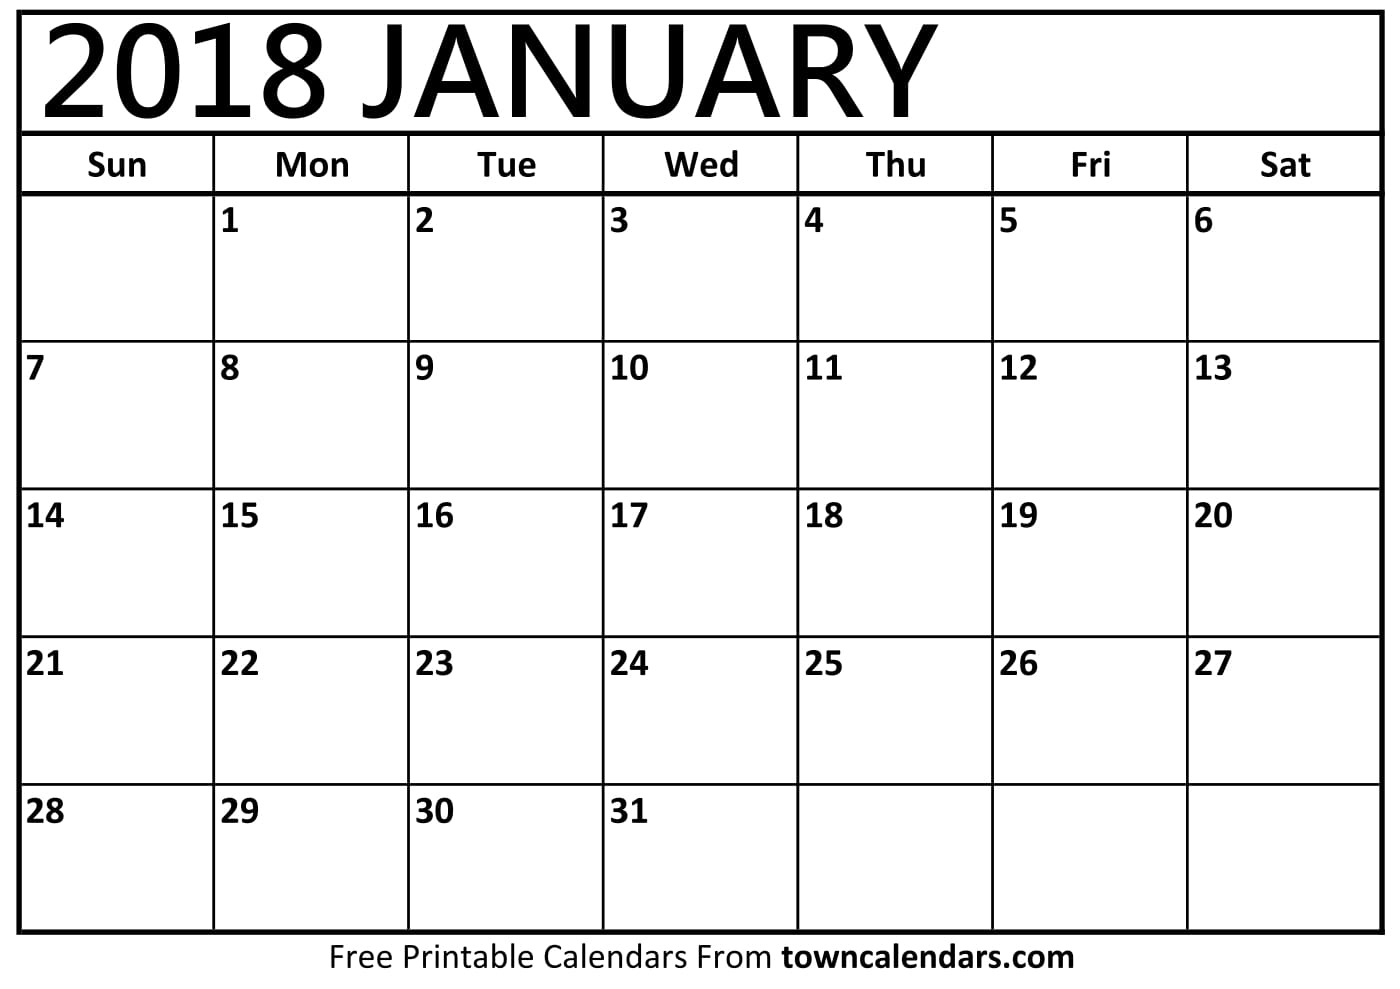 2018 Calendar Printable towncalendars com